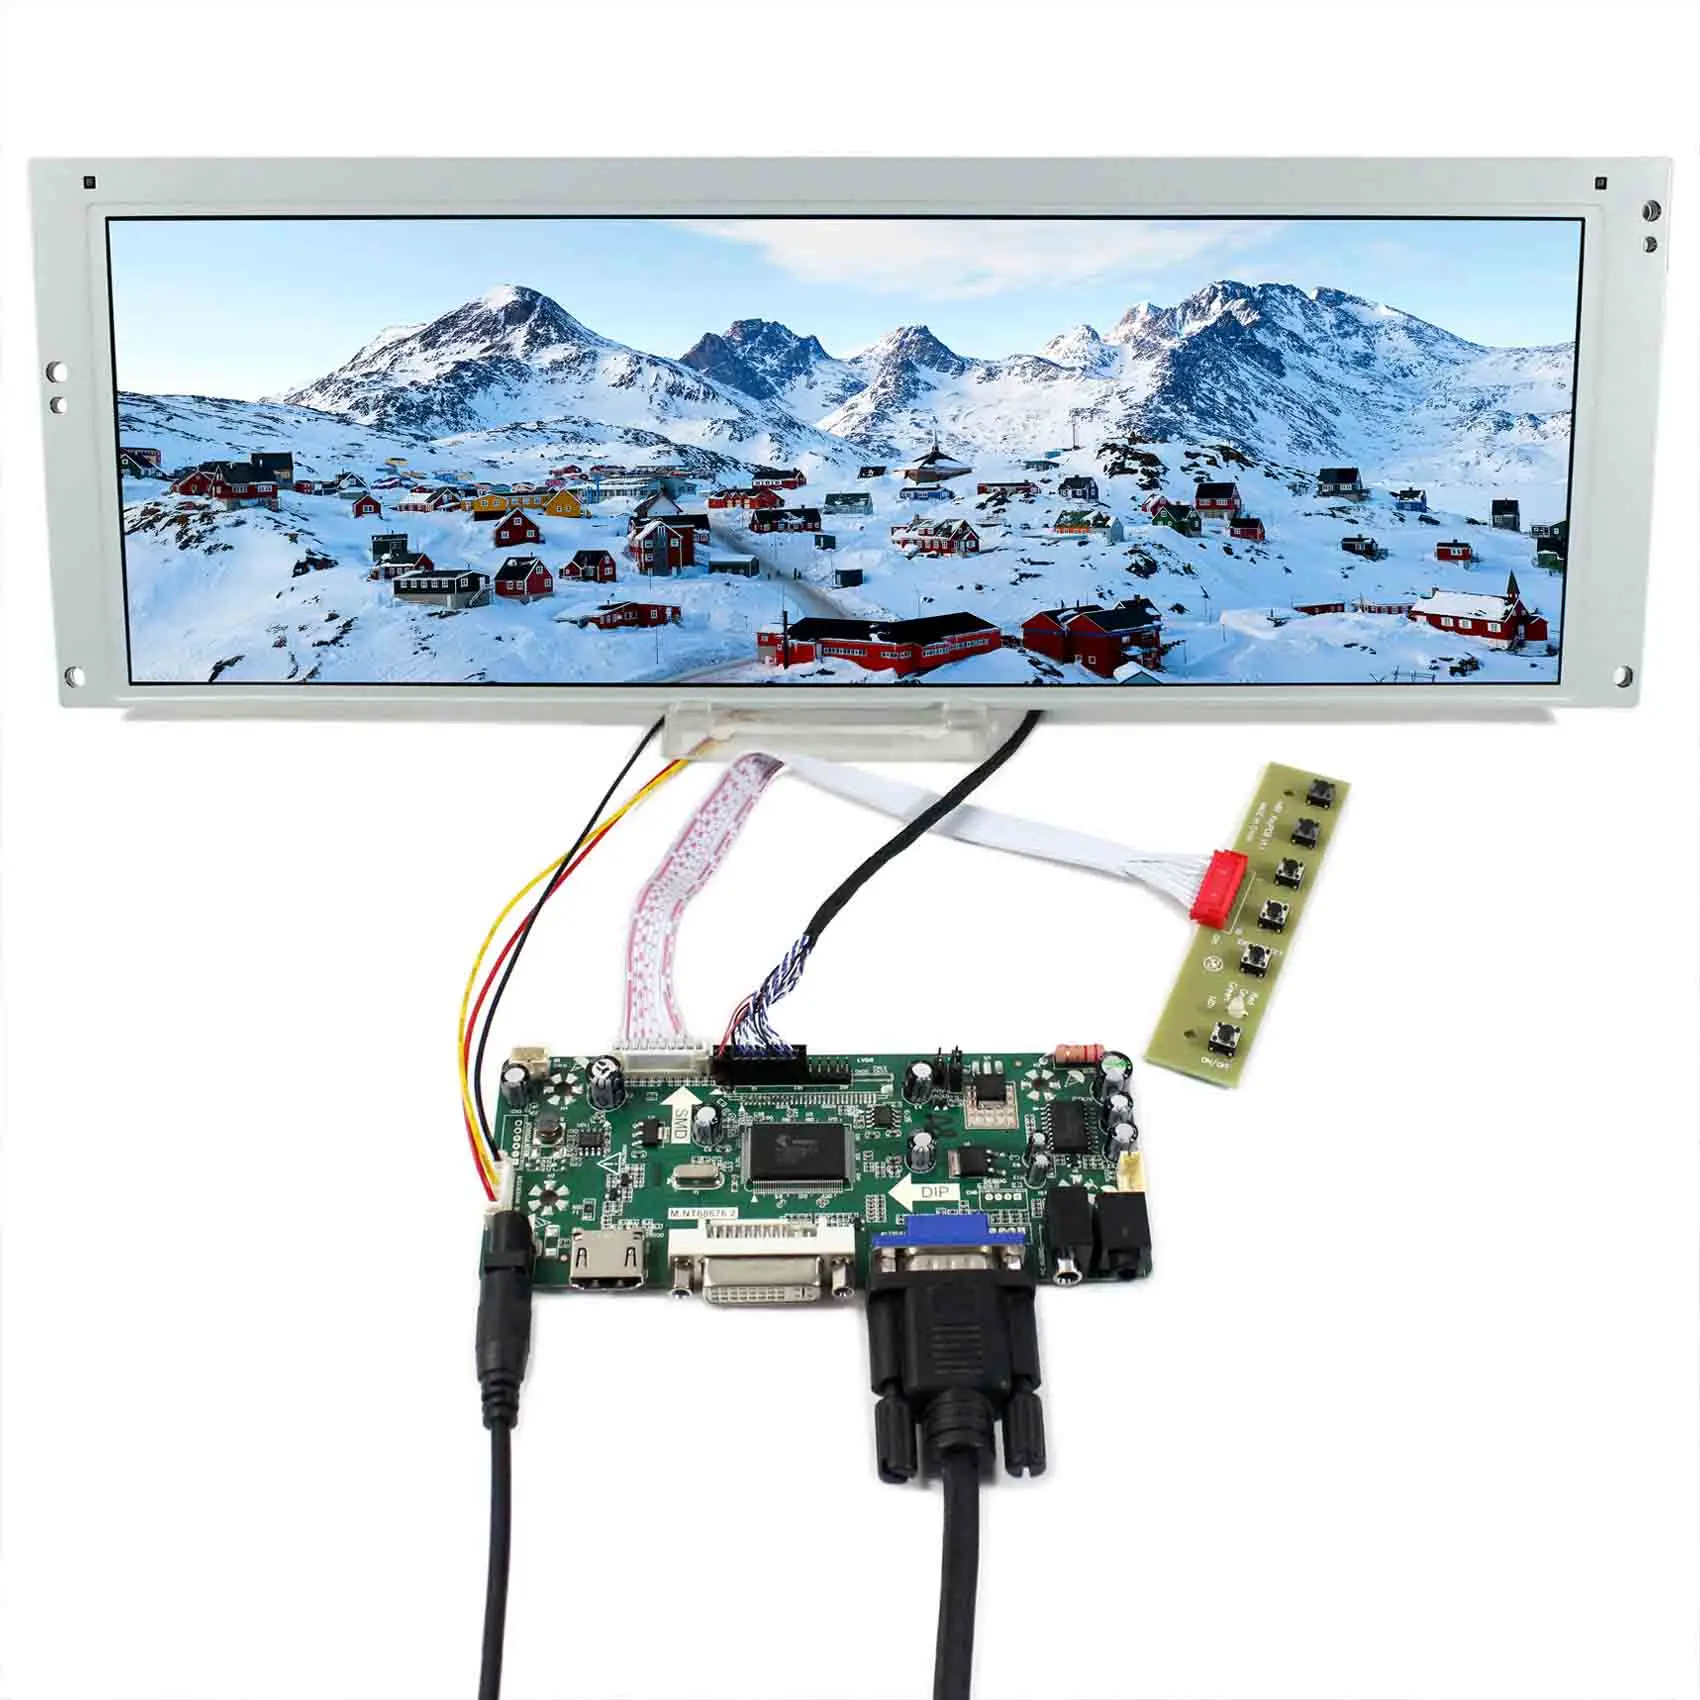 VsDisplay 14.9インチlta149b780f 1280x390 LCDスクリーンおよびブレードアーケードマーキー/dmd仮想ピン ボール/カーゲージモニター用コントローラーボード Aliexpress